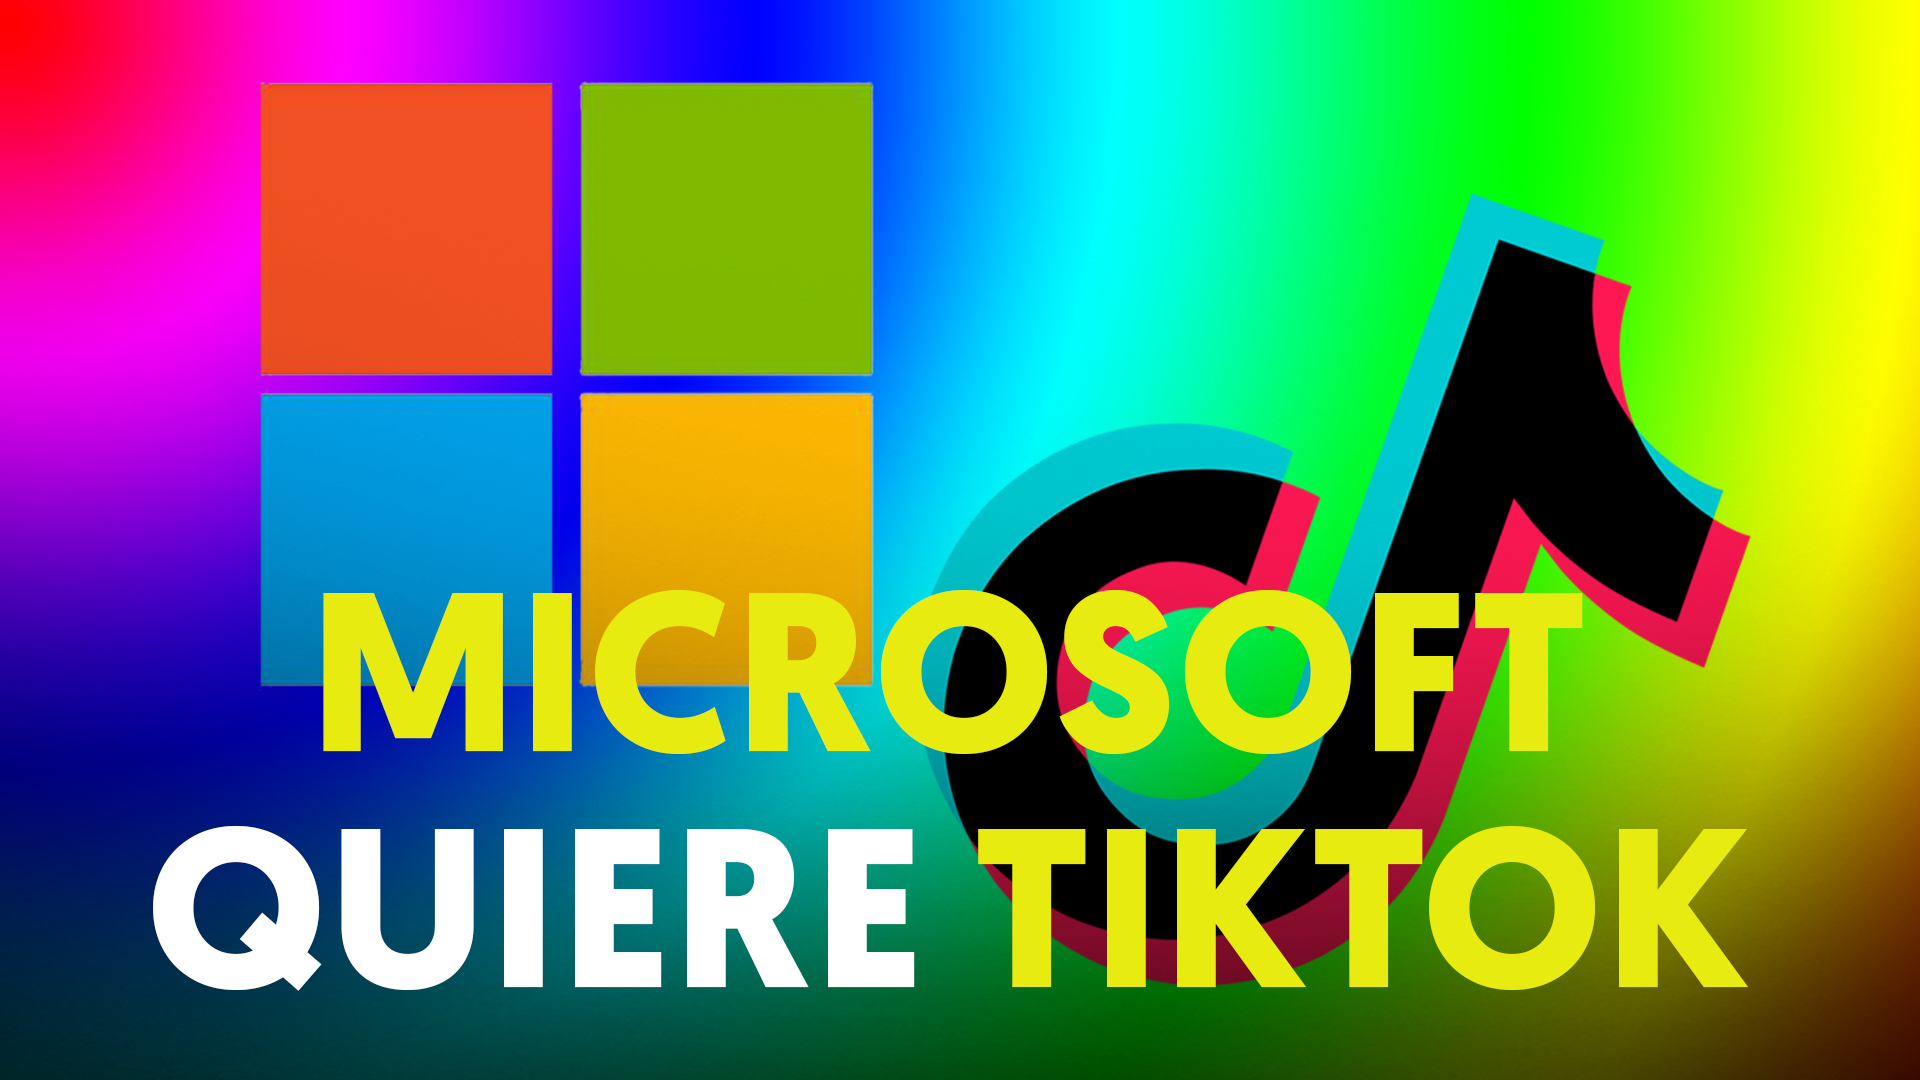 Microsoft tiene hasta el 15 de septiembre para comprar TikTok: Trump